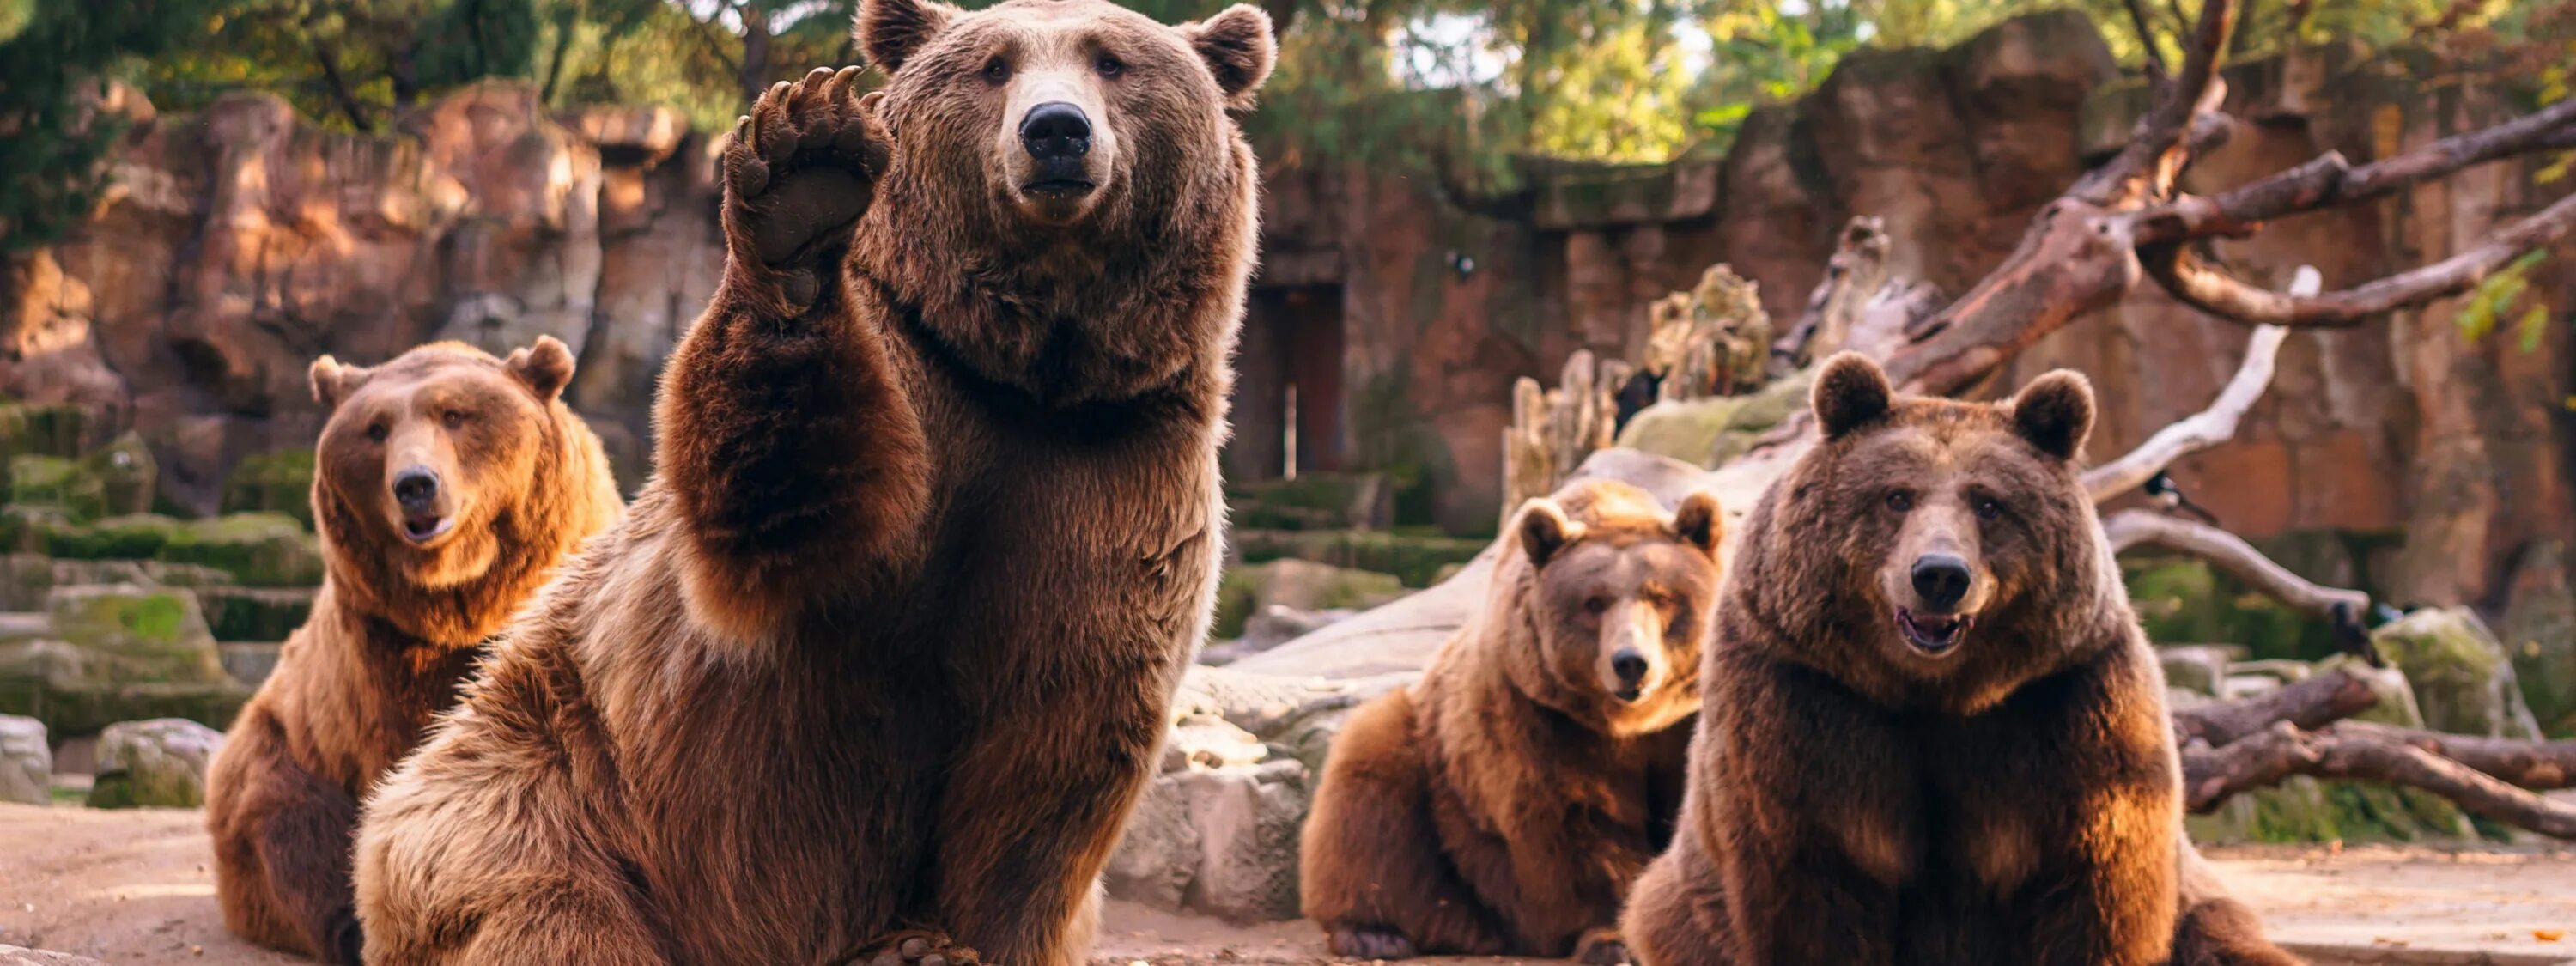 Много медведей. Стая медведей. Семья медведей. Семейство Медвежьи.